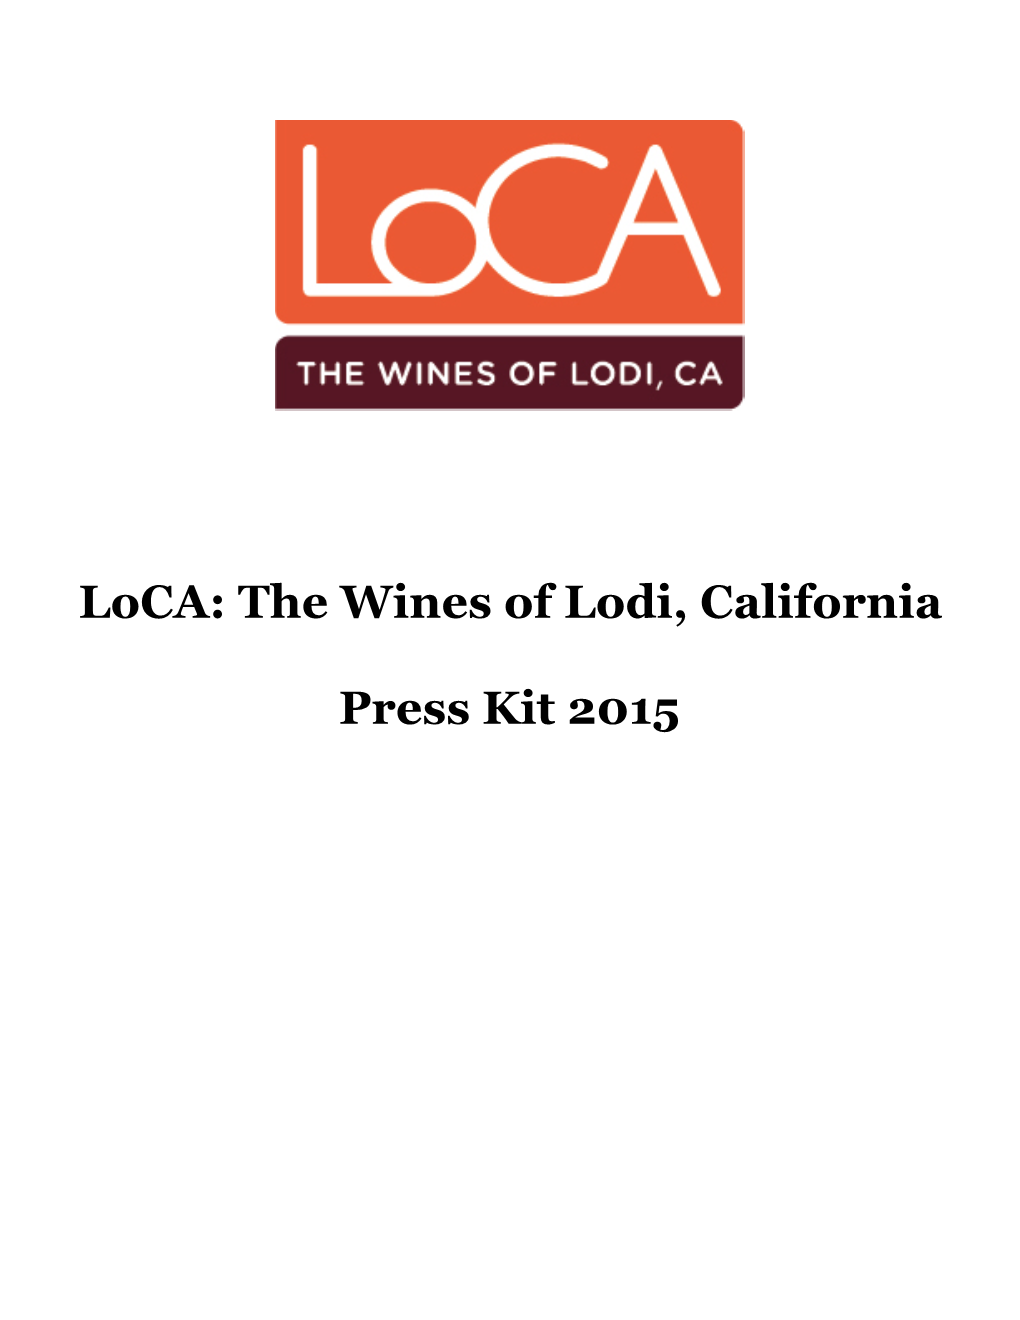 Lodi Wines Press Kit 2015